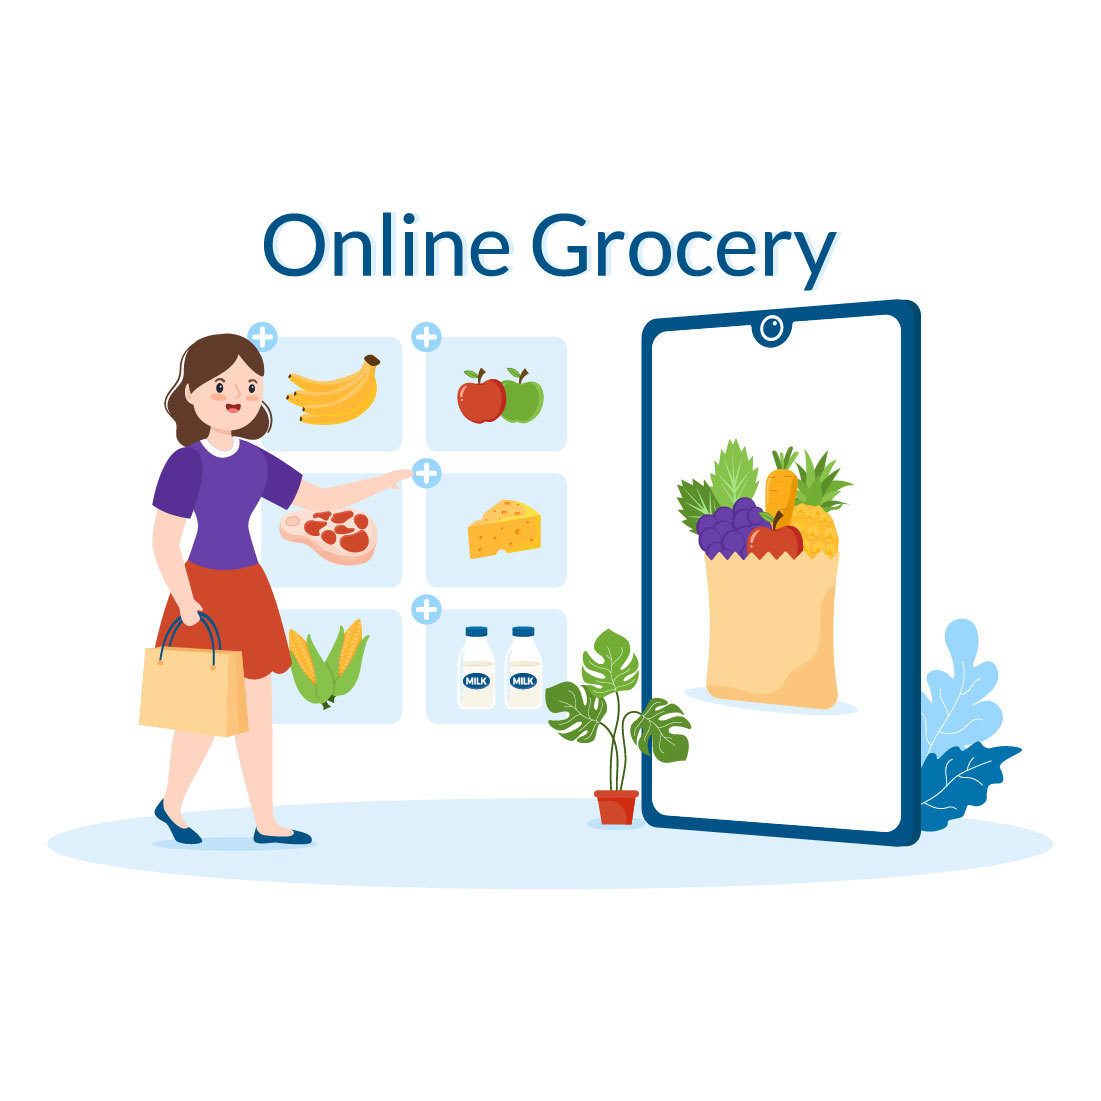 Online Grocery Store or Supermarket Design Illustration cover image.